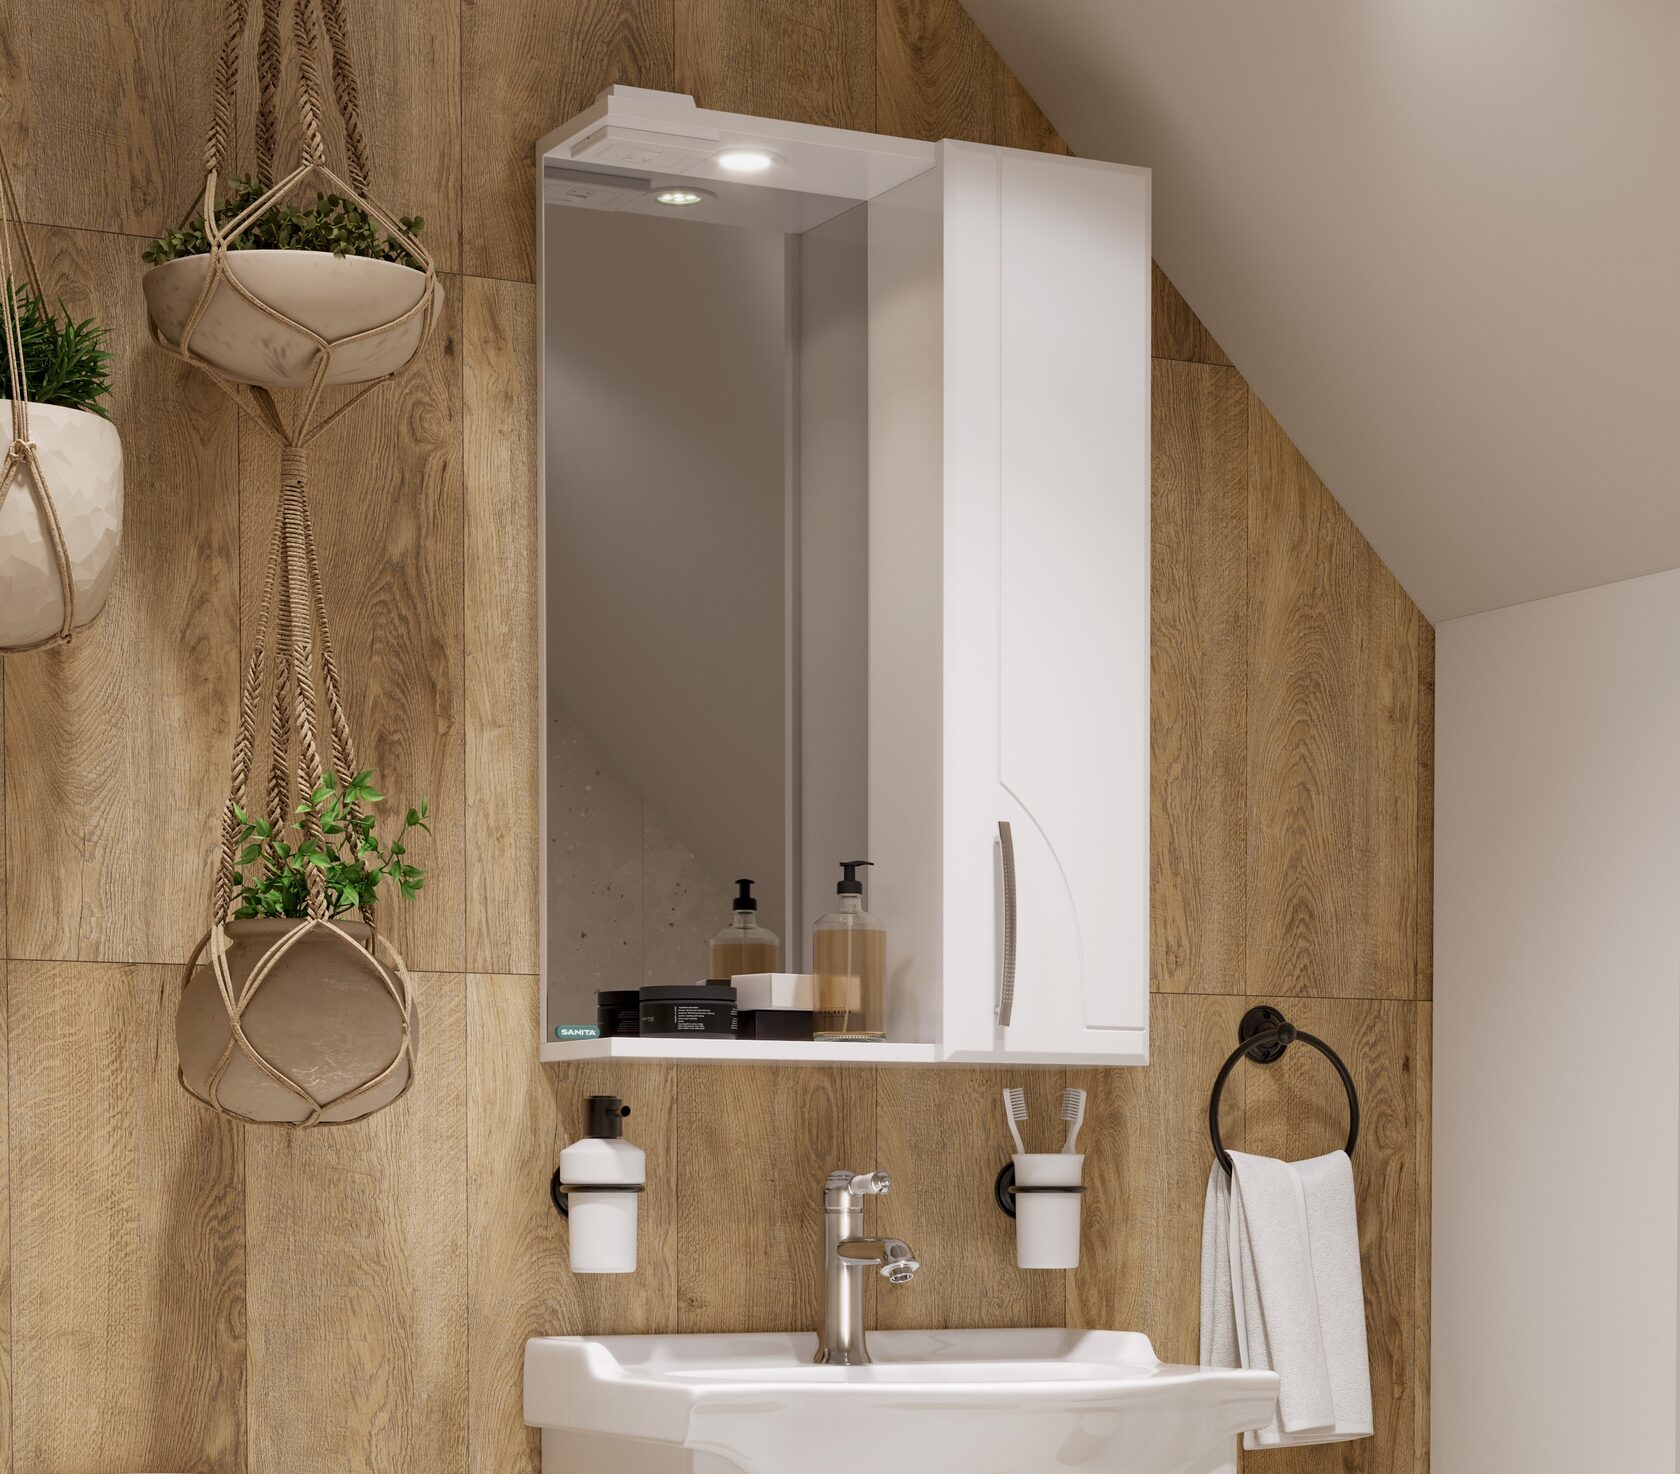 Шкаф с зеркалом для ванной "идеал-01" 800*520*176 мм, белый "sanita" idlsamr56019w1